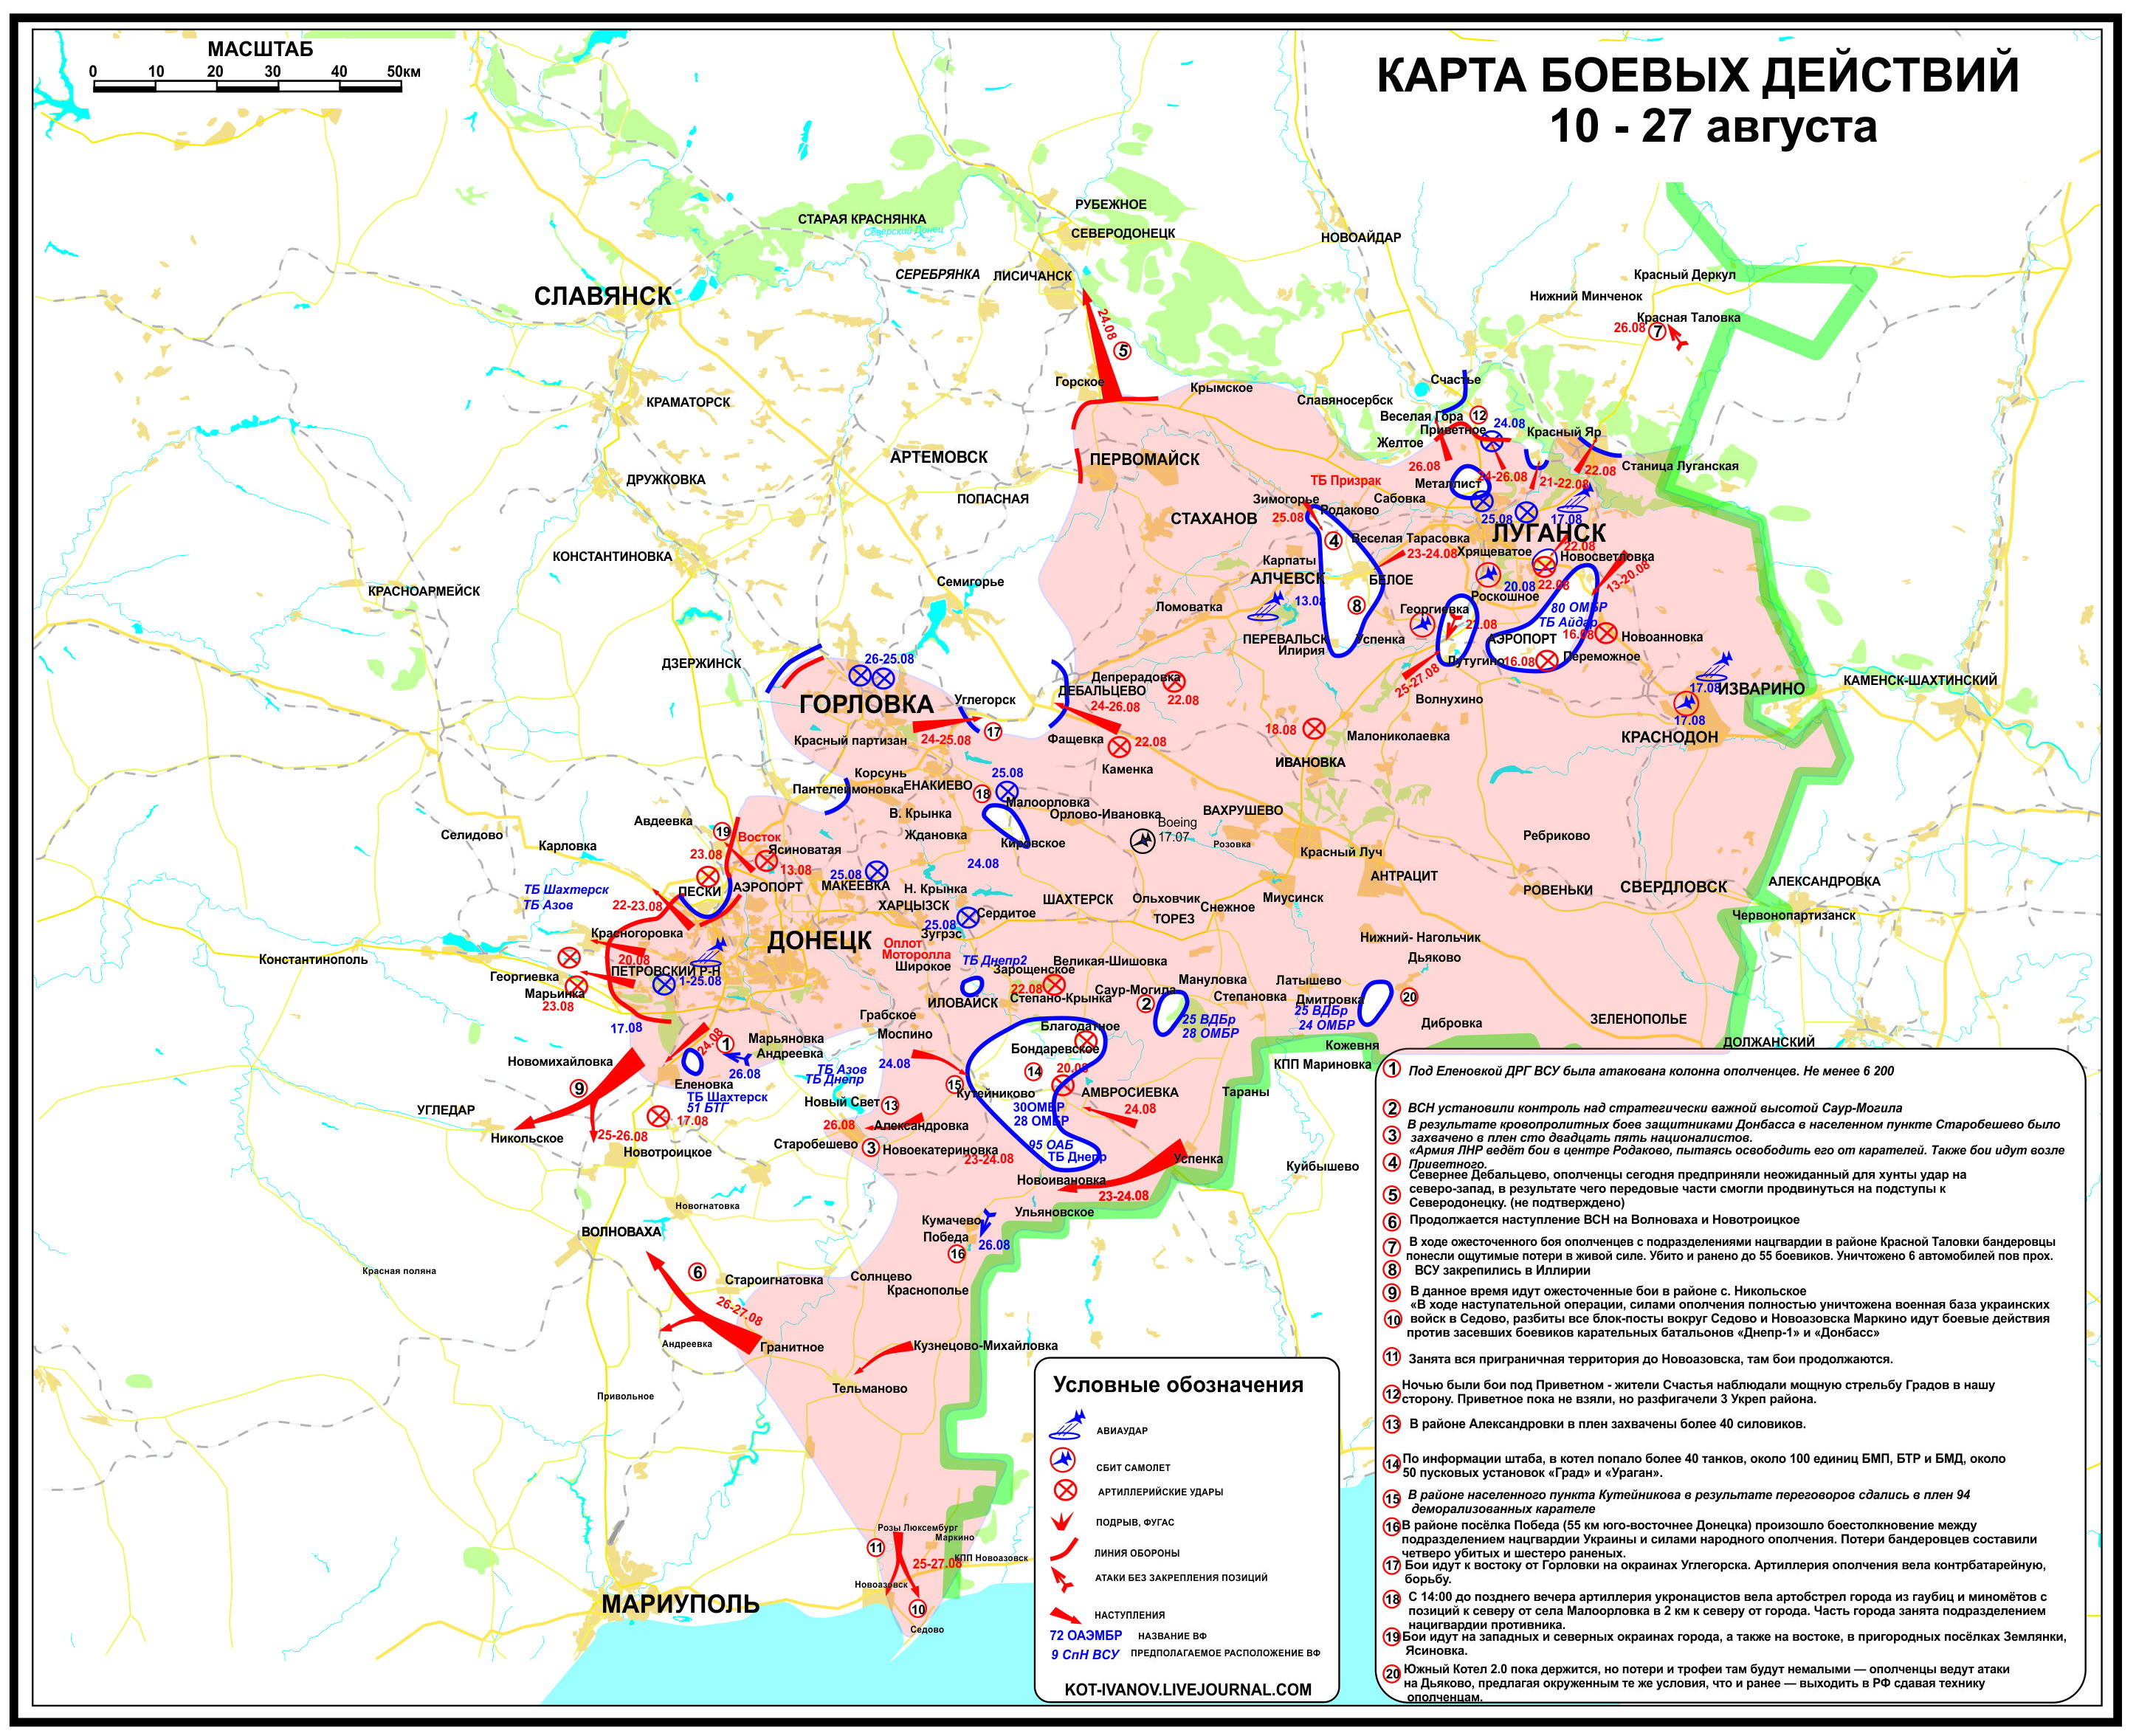 Situation_in_der_Ostukraine_zum_siebenundzwanzigsten_August_aus_Separatistensicht.jpg